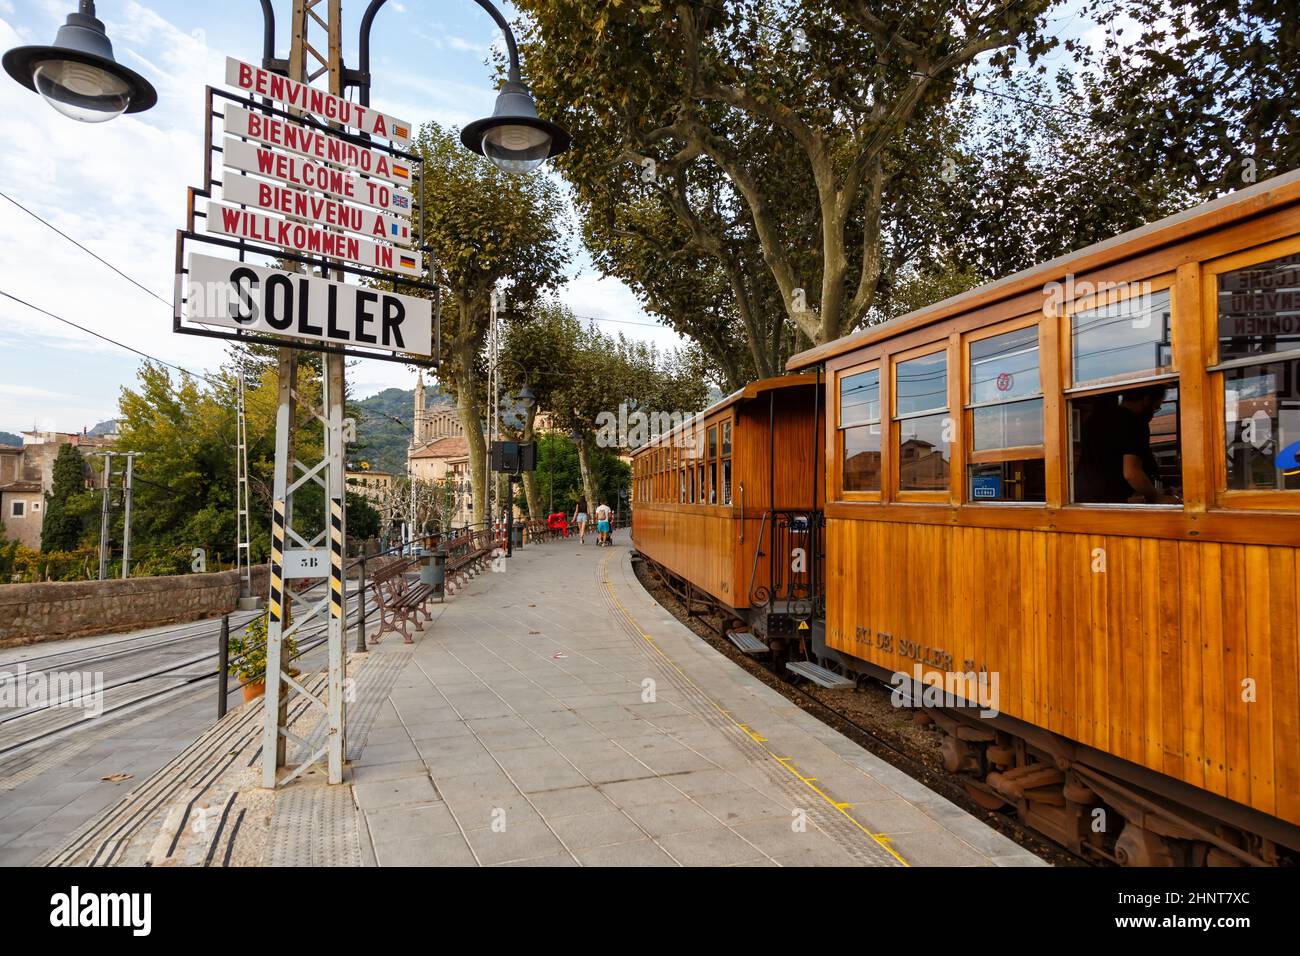 Antiker Zug Tren de Soller öffentlicher Nahverkehr am Bahnhof Soller auf Mallorca in Spanien Stockfoto